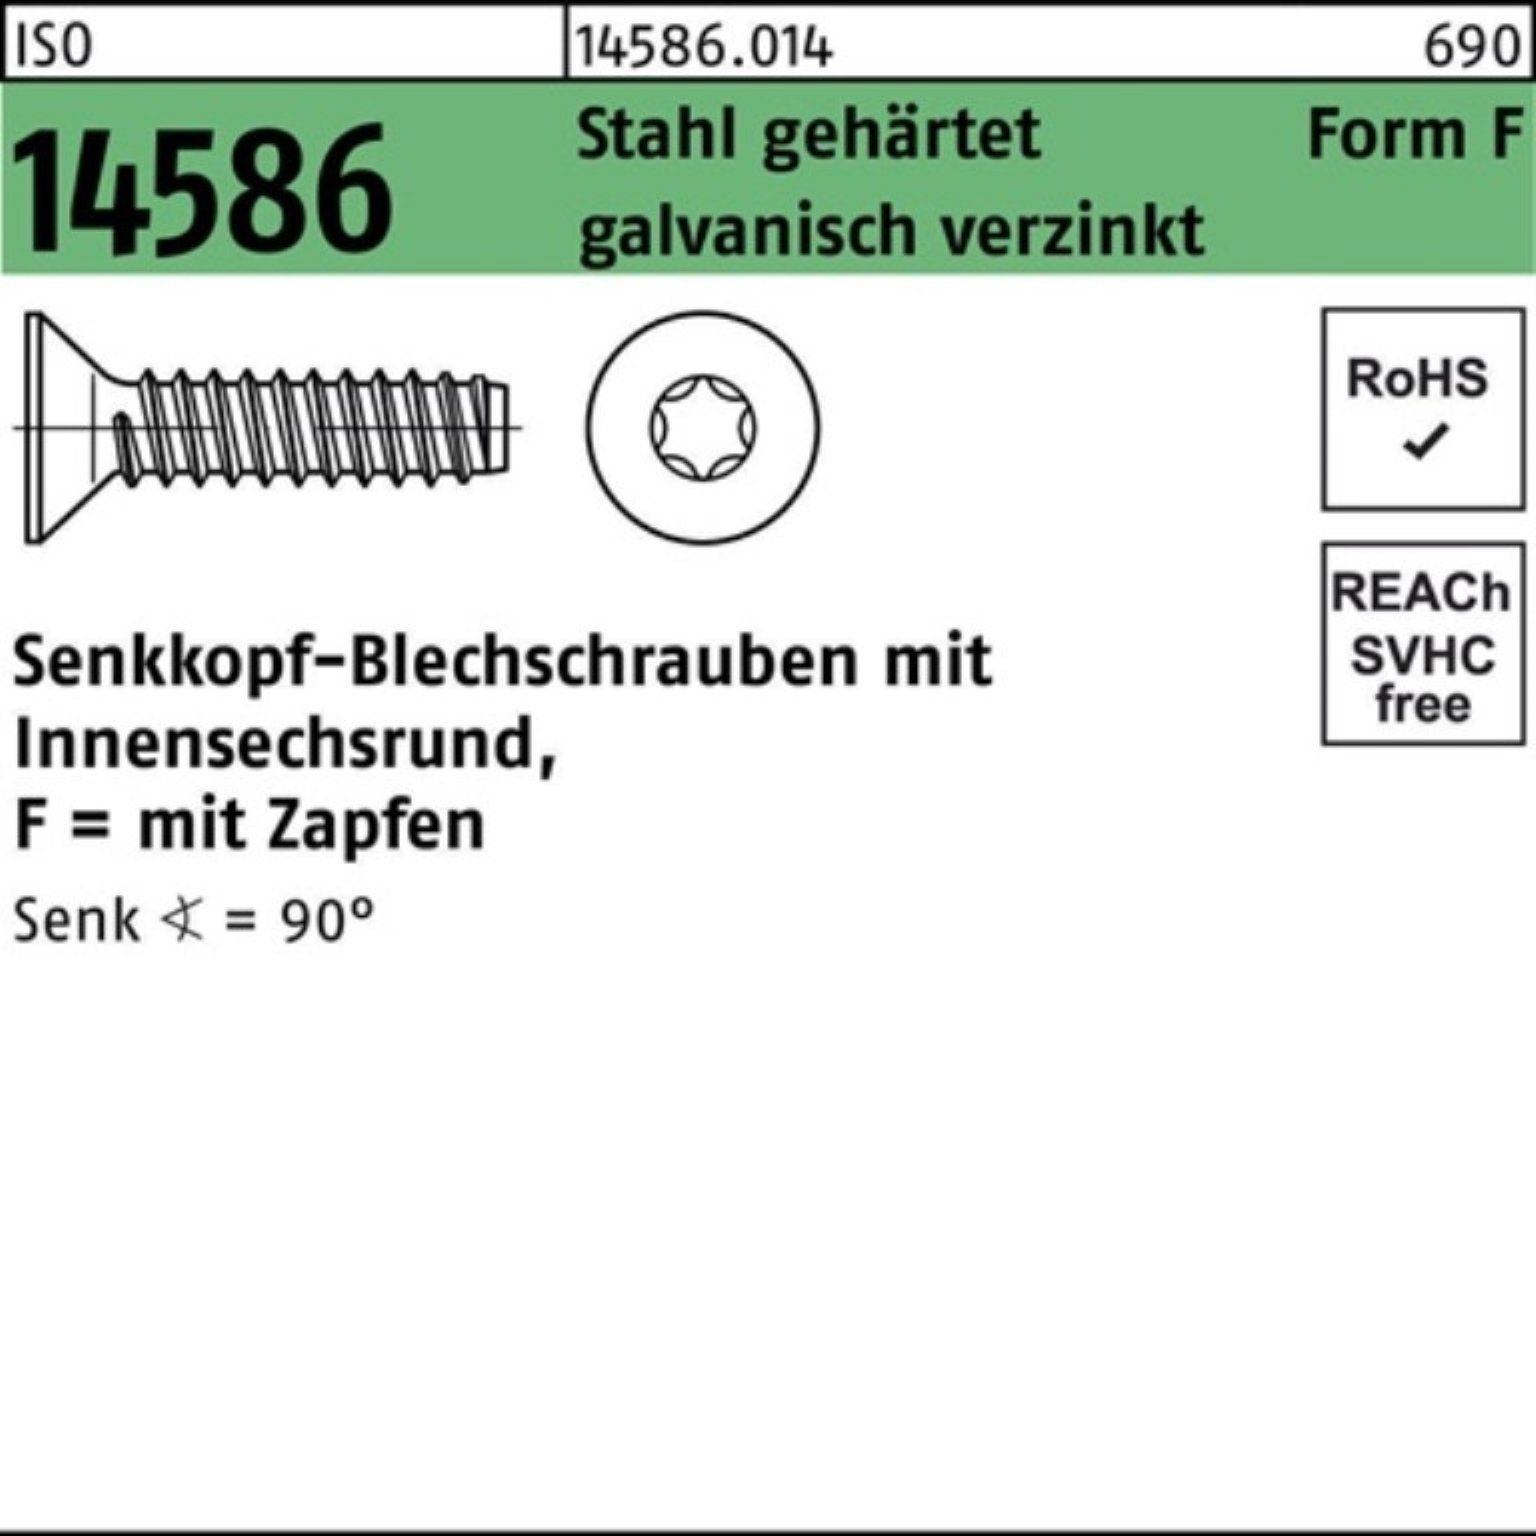 Reyher Schraube 250er Pack Senkblechschraube 4,8x70 14586 Stahl geh. -F ISO ISR/Zapfen